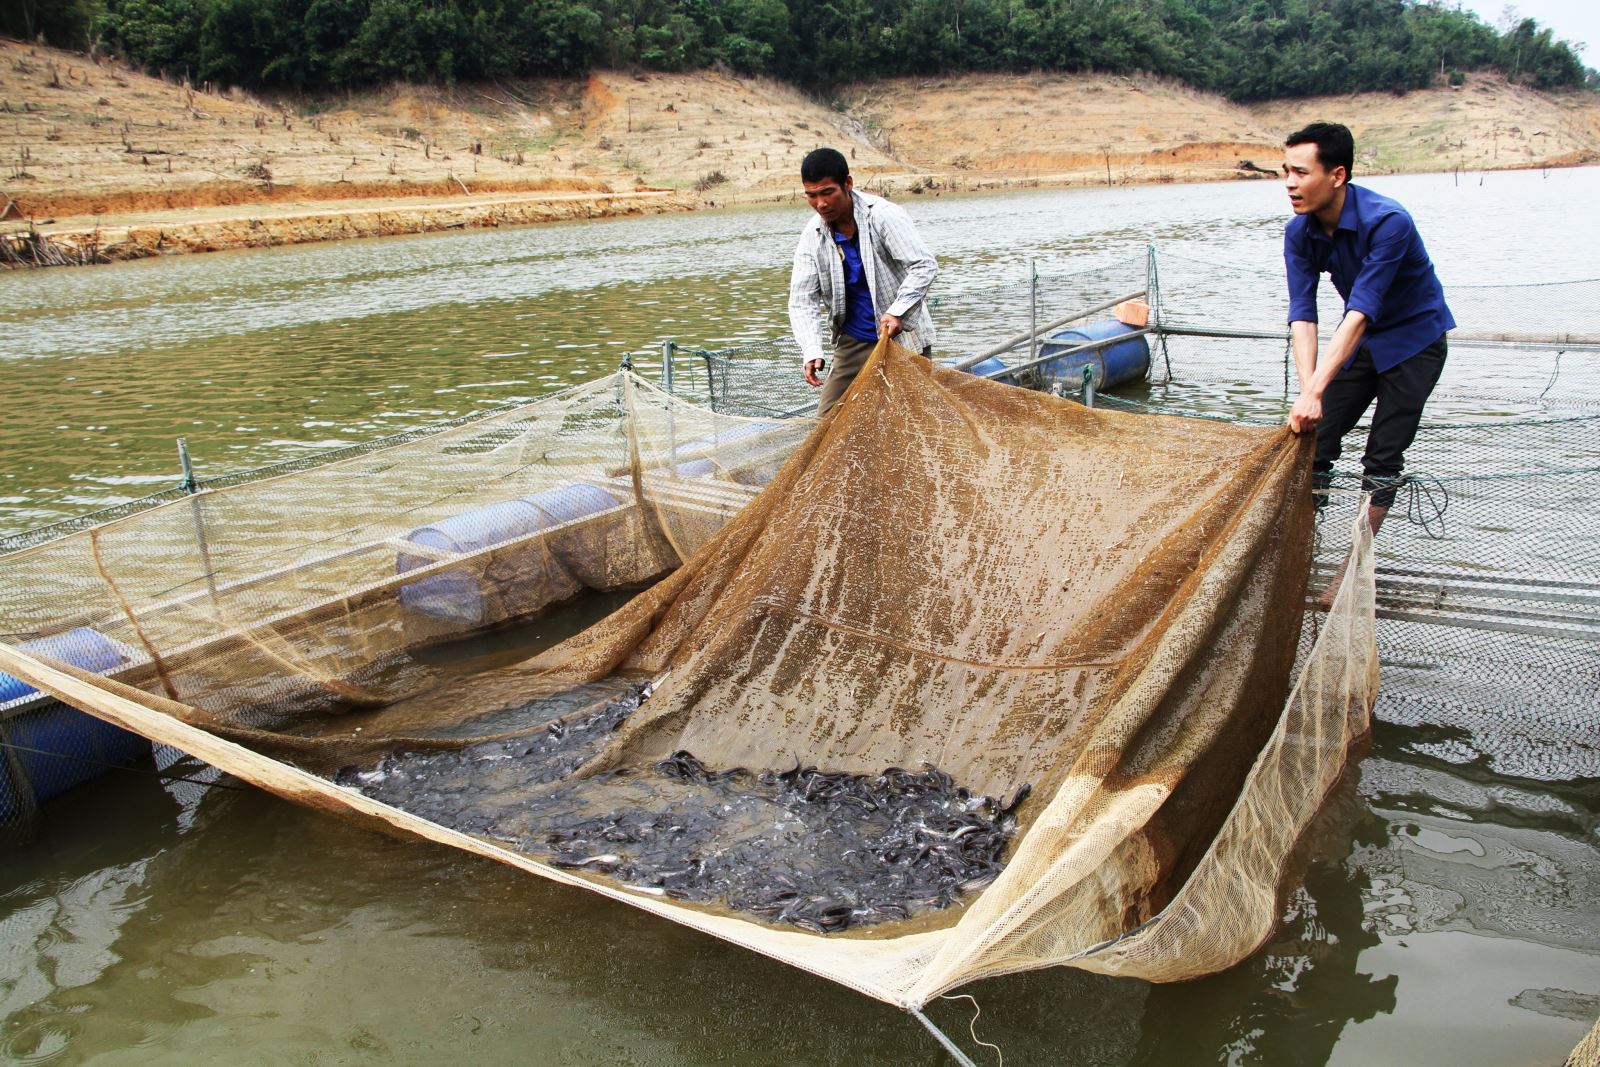 Nuôi cá lồng tạo sinh kế bền vững cho người dân vùng lòng hồ thủy điện ở huyện Quế Phong, tỉnh Nghệ An.